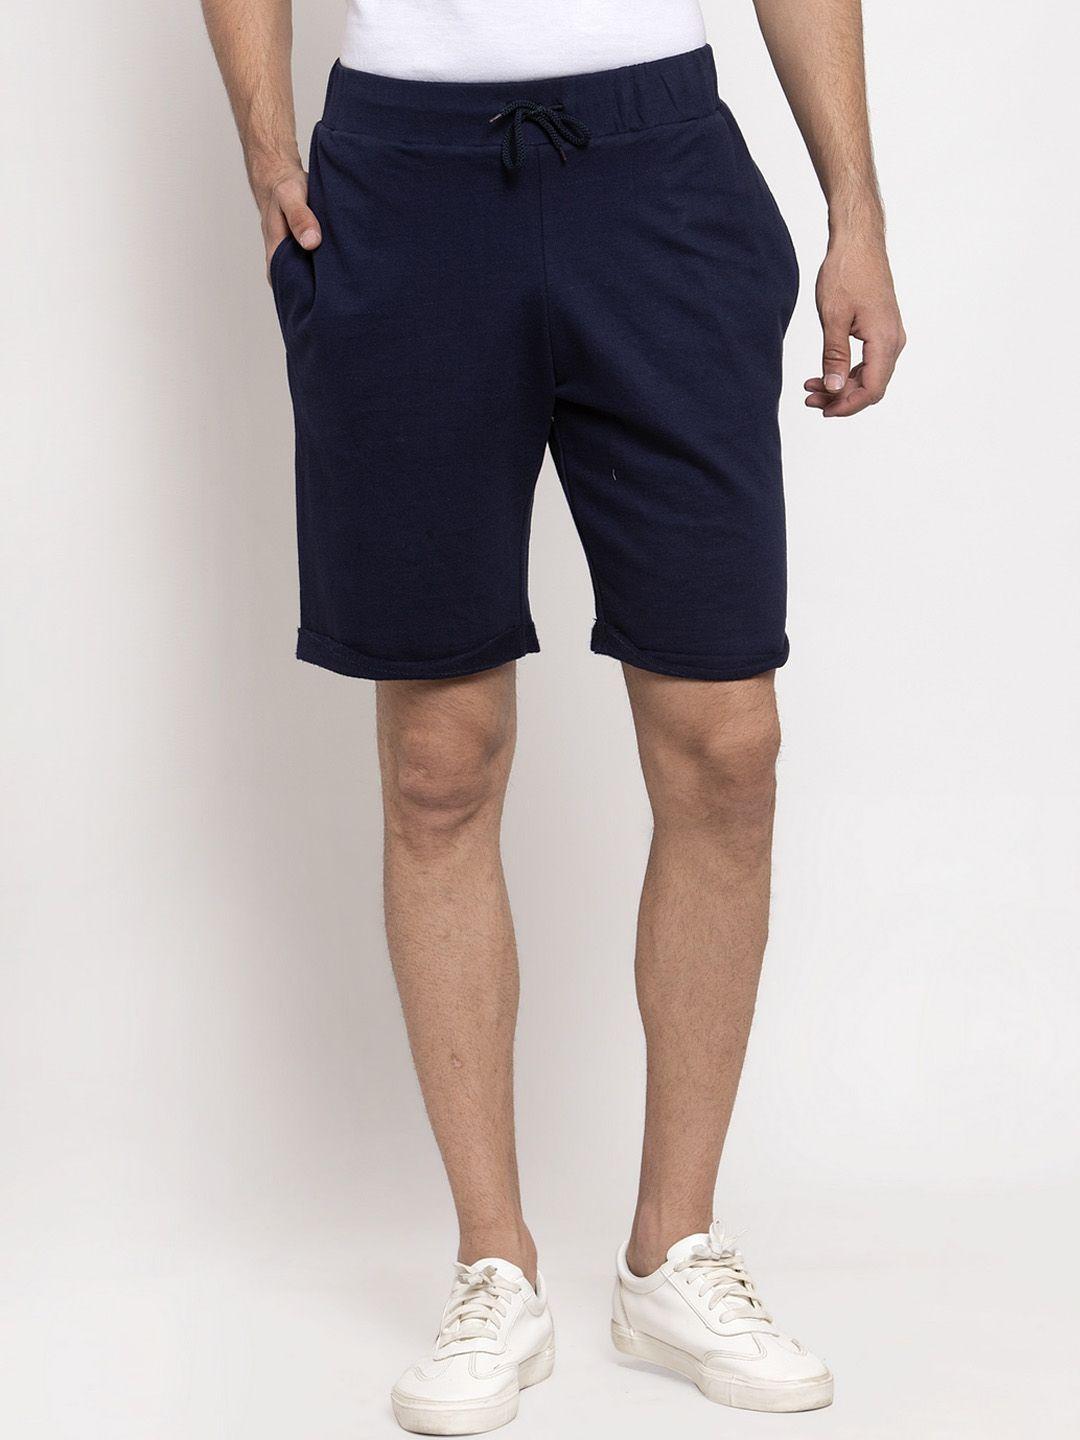 door74 men navy blue cotton shorts